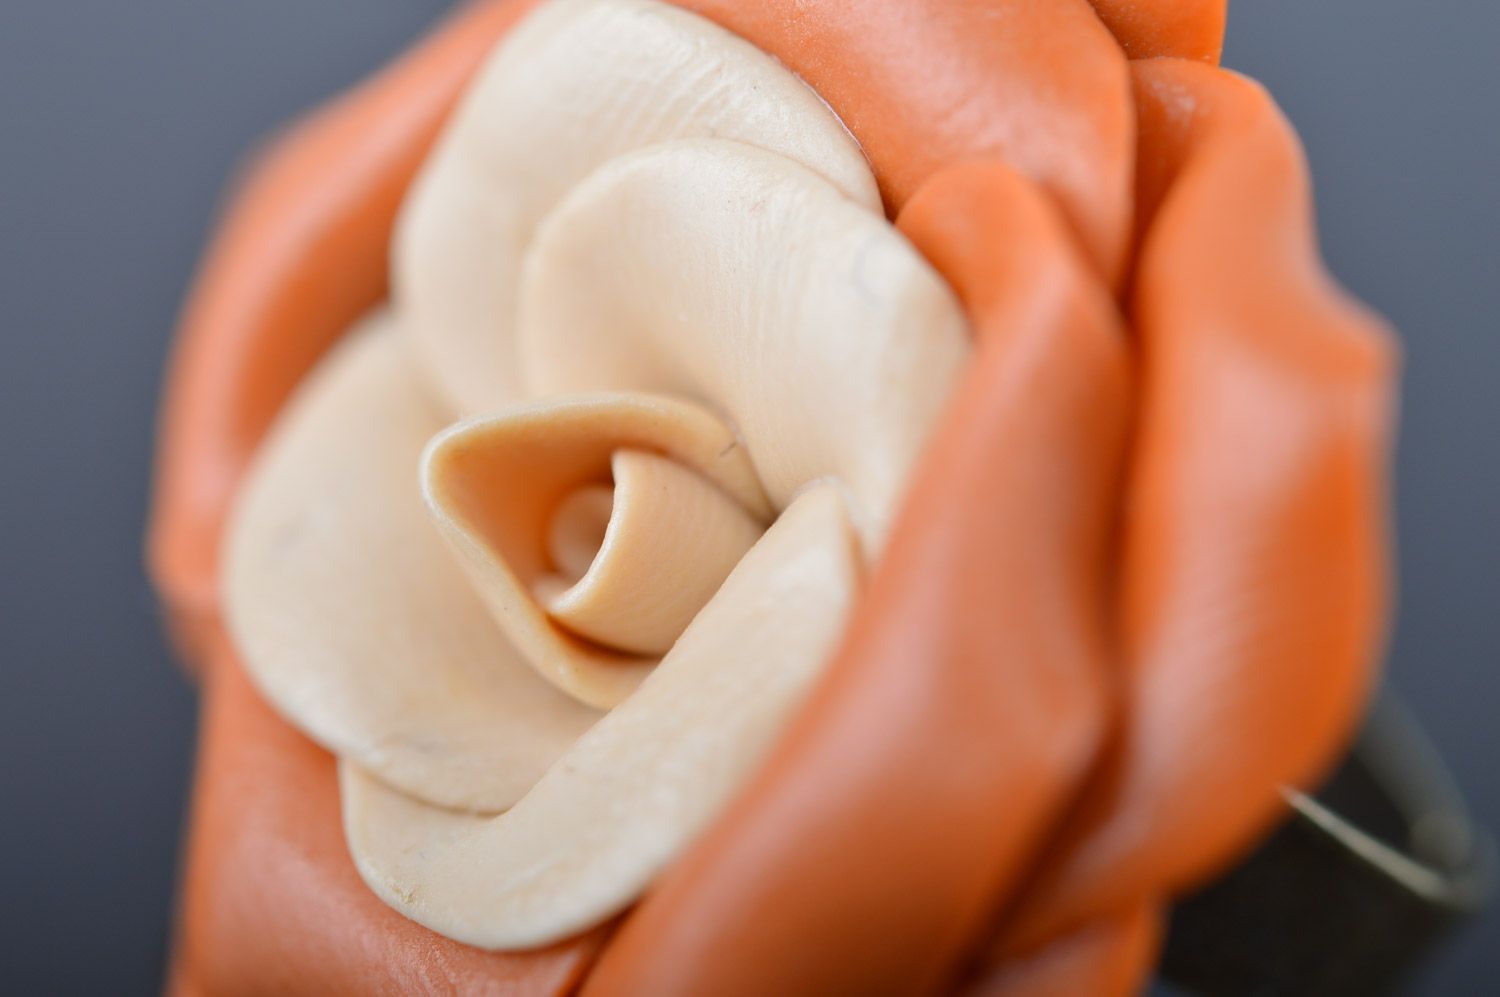 Homemade orange plastic flower ring for girls photo 3